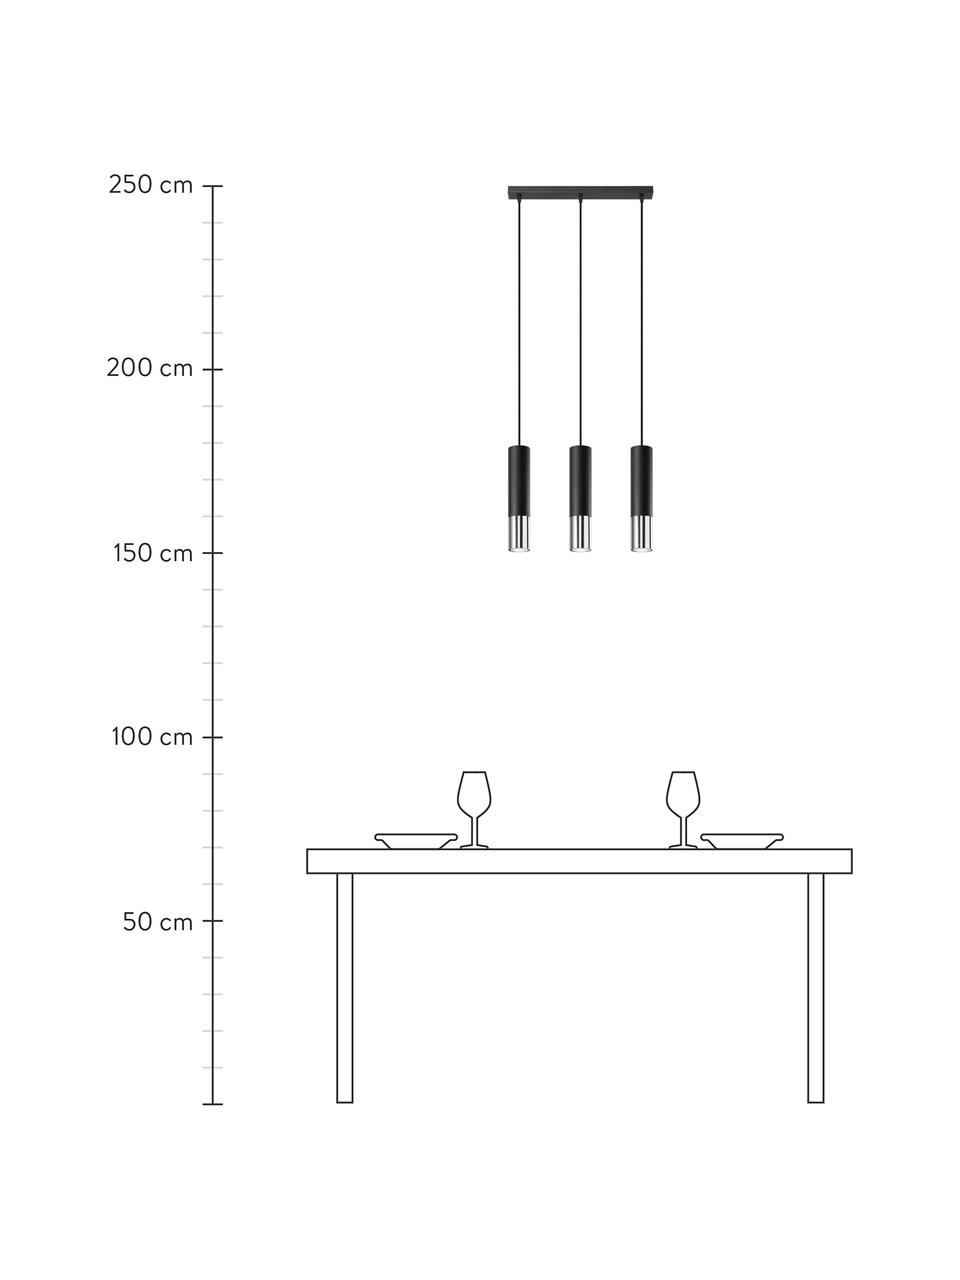 Lampa wisząca Longbot, Czarny, chrom, S 40 x W 30 cm